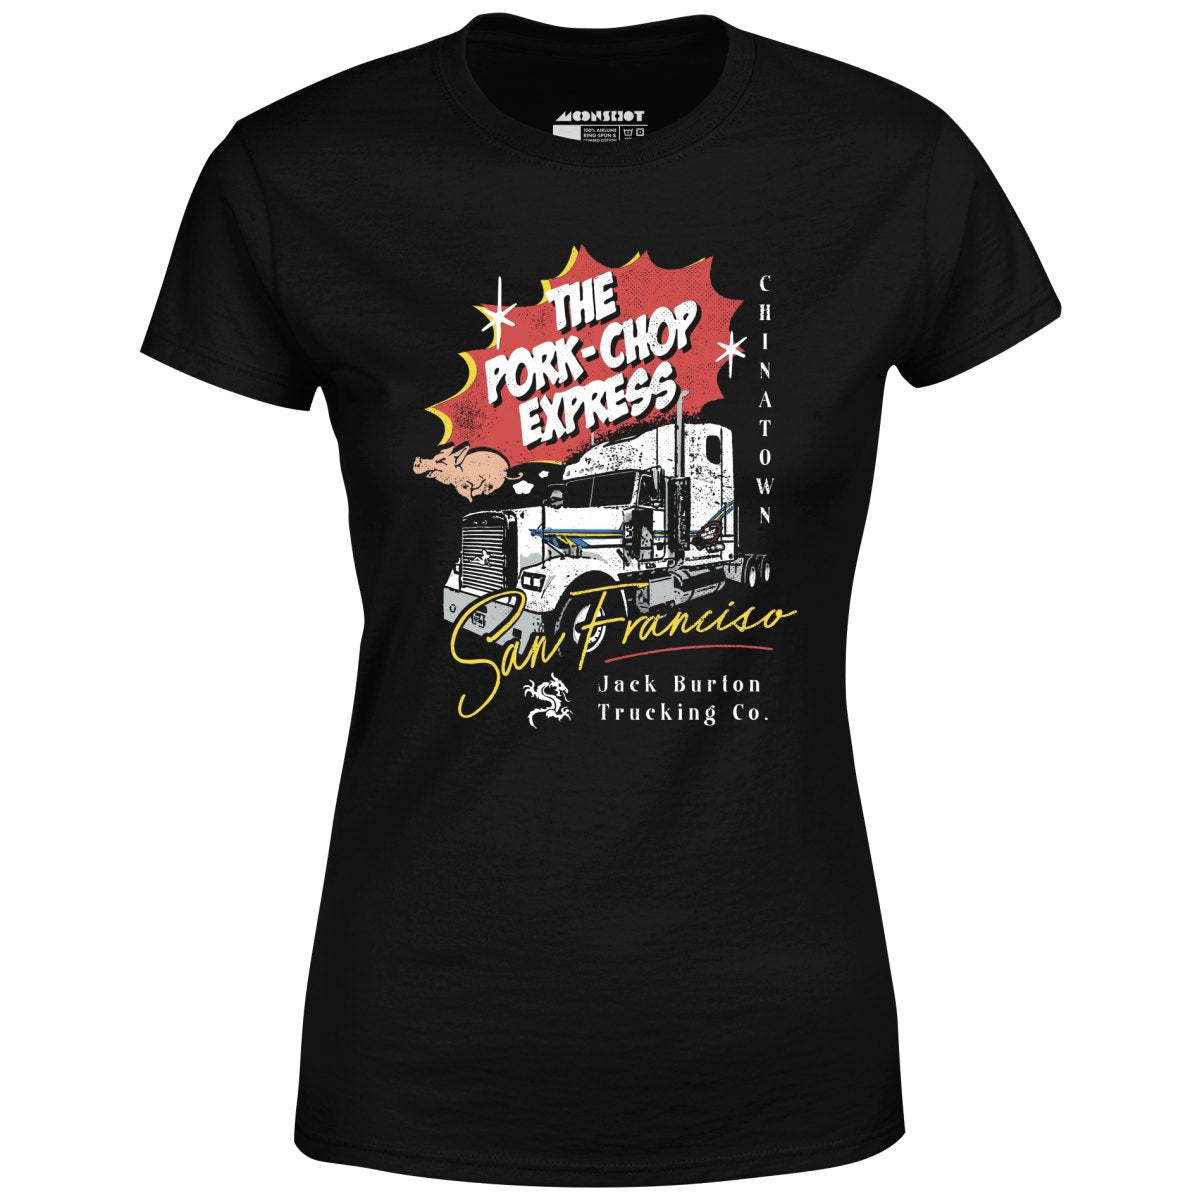 The Pork Chop Express - Women's T-Shirt